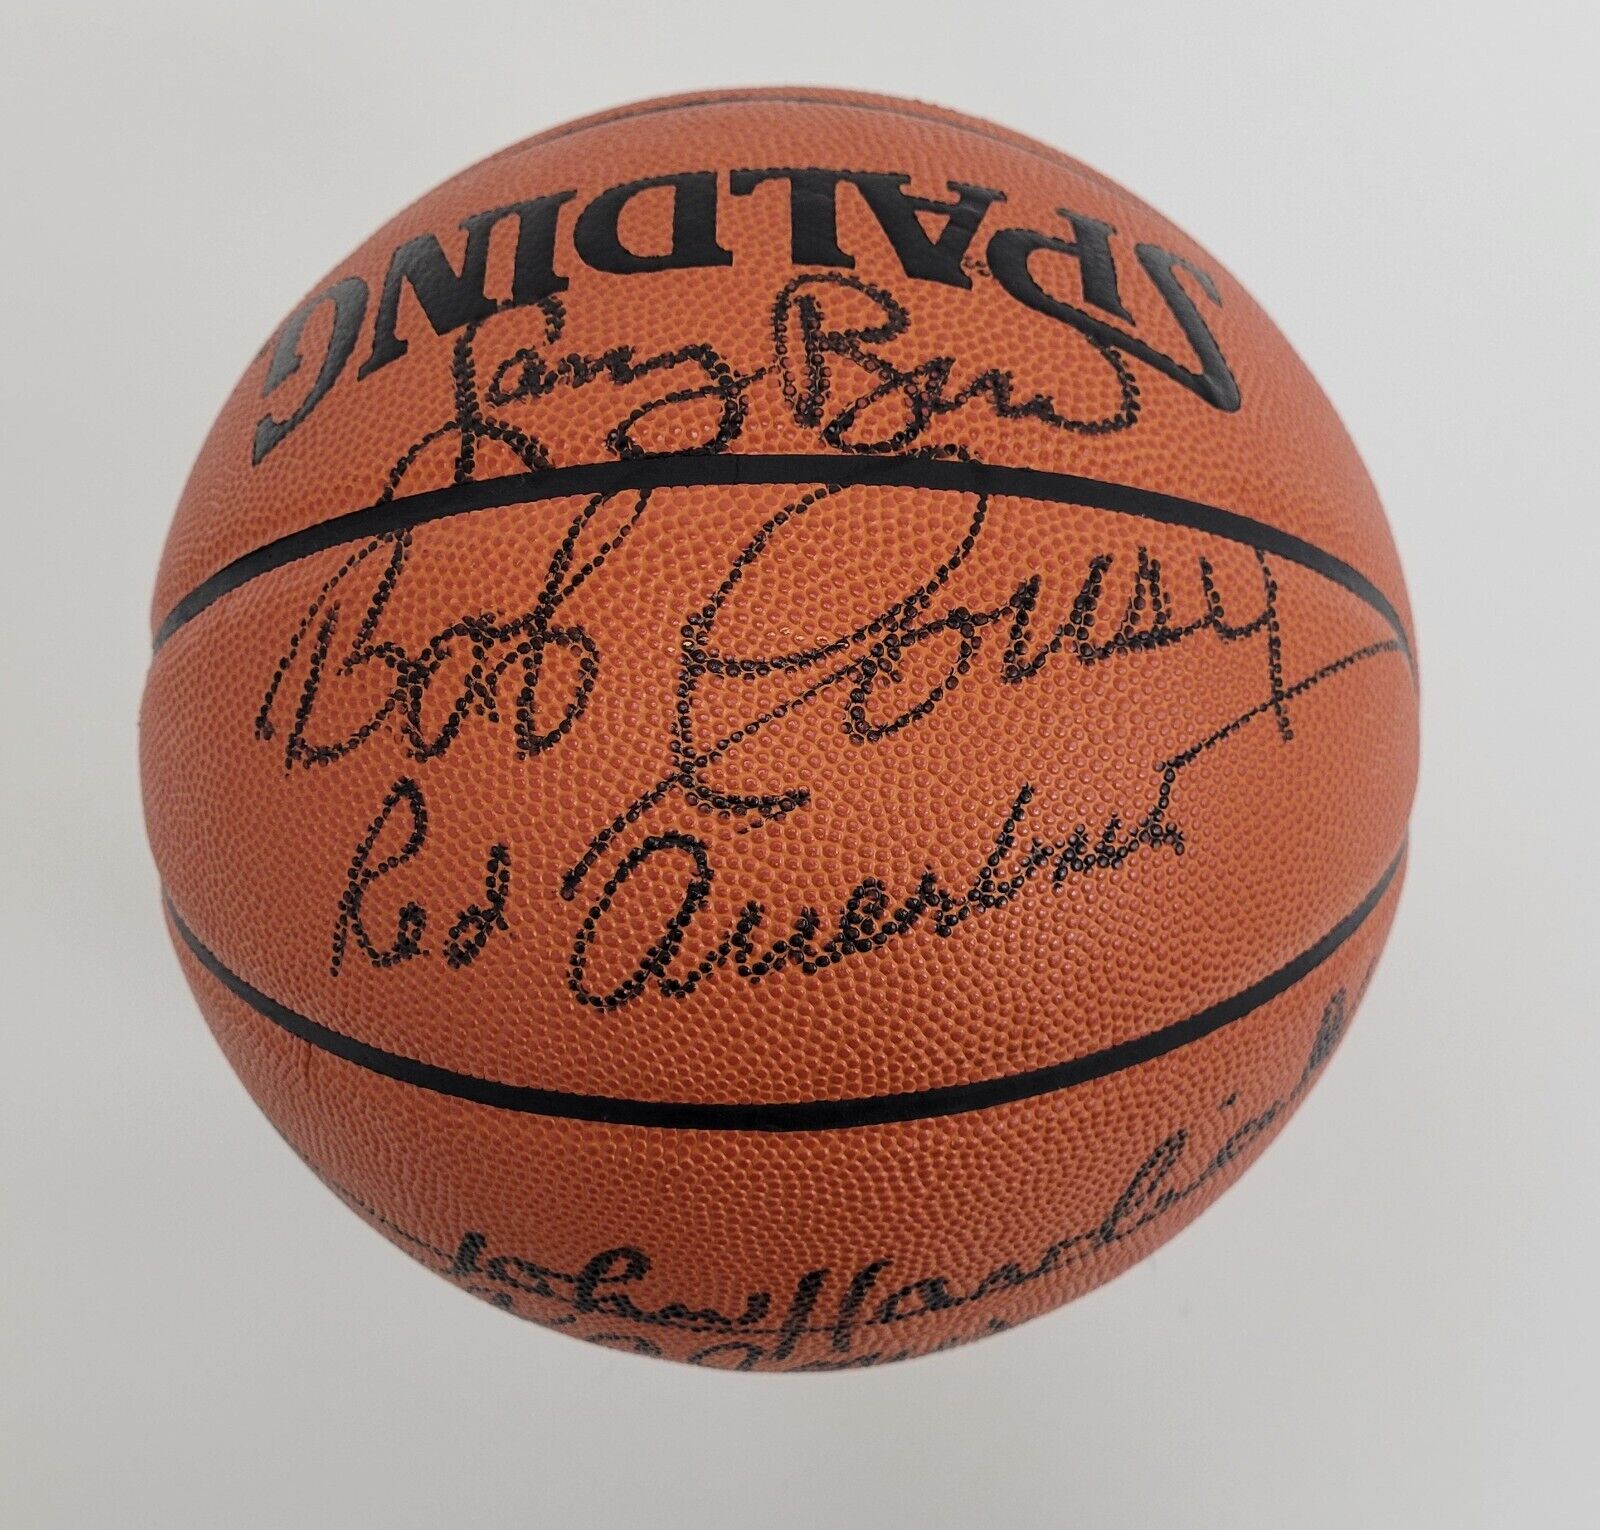 Bill Russell Larry Bird Boston Celtics Legends Signed Game Basketball Beckett